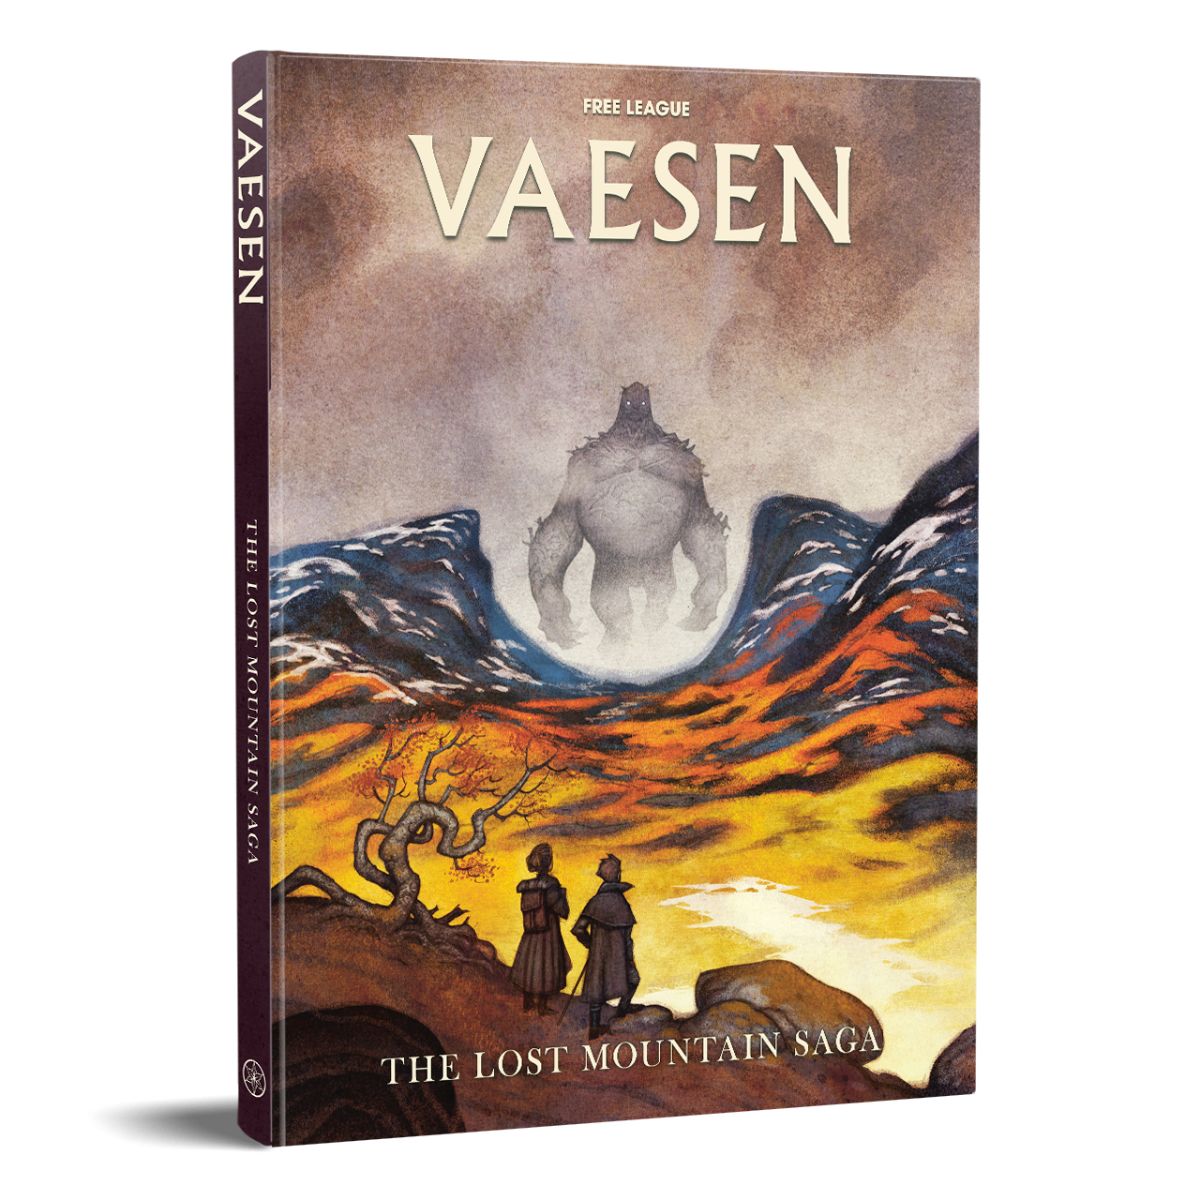 The Lost Mountain Saga - Vaesen